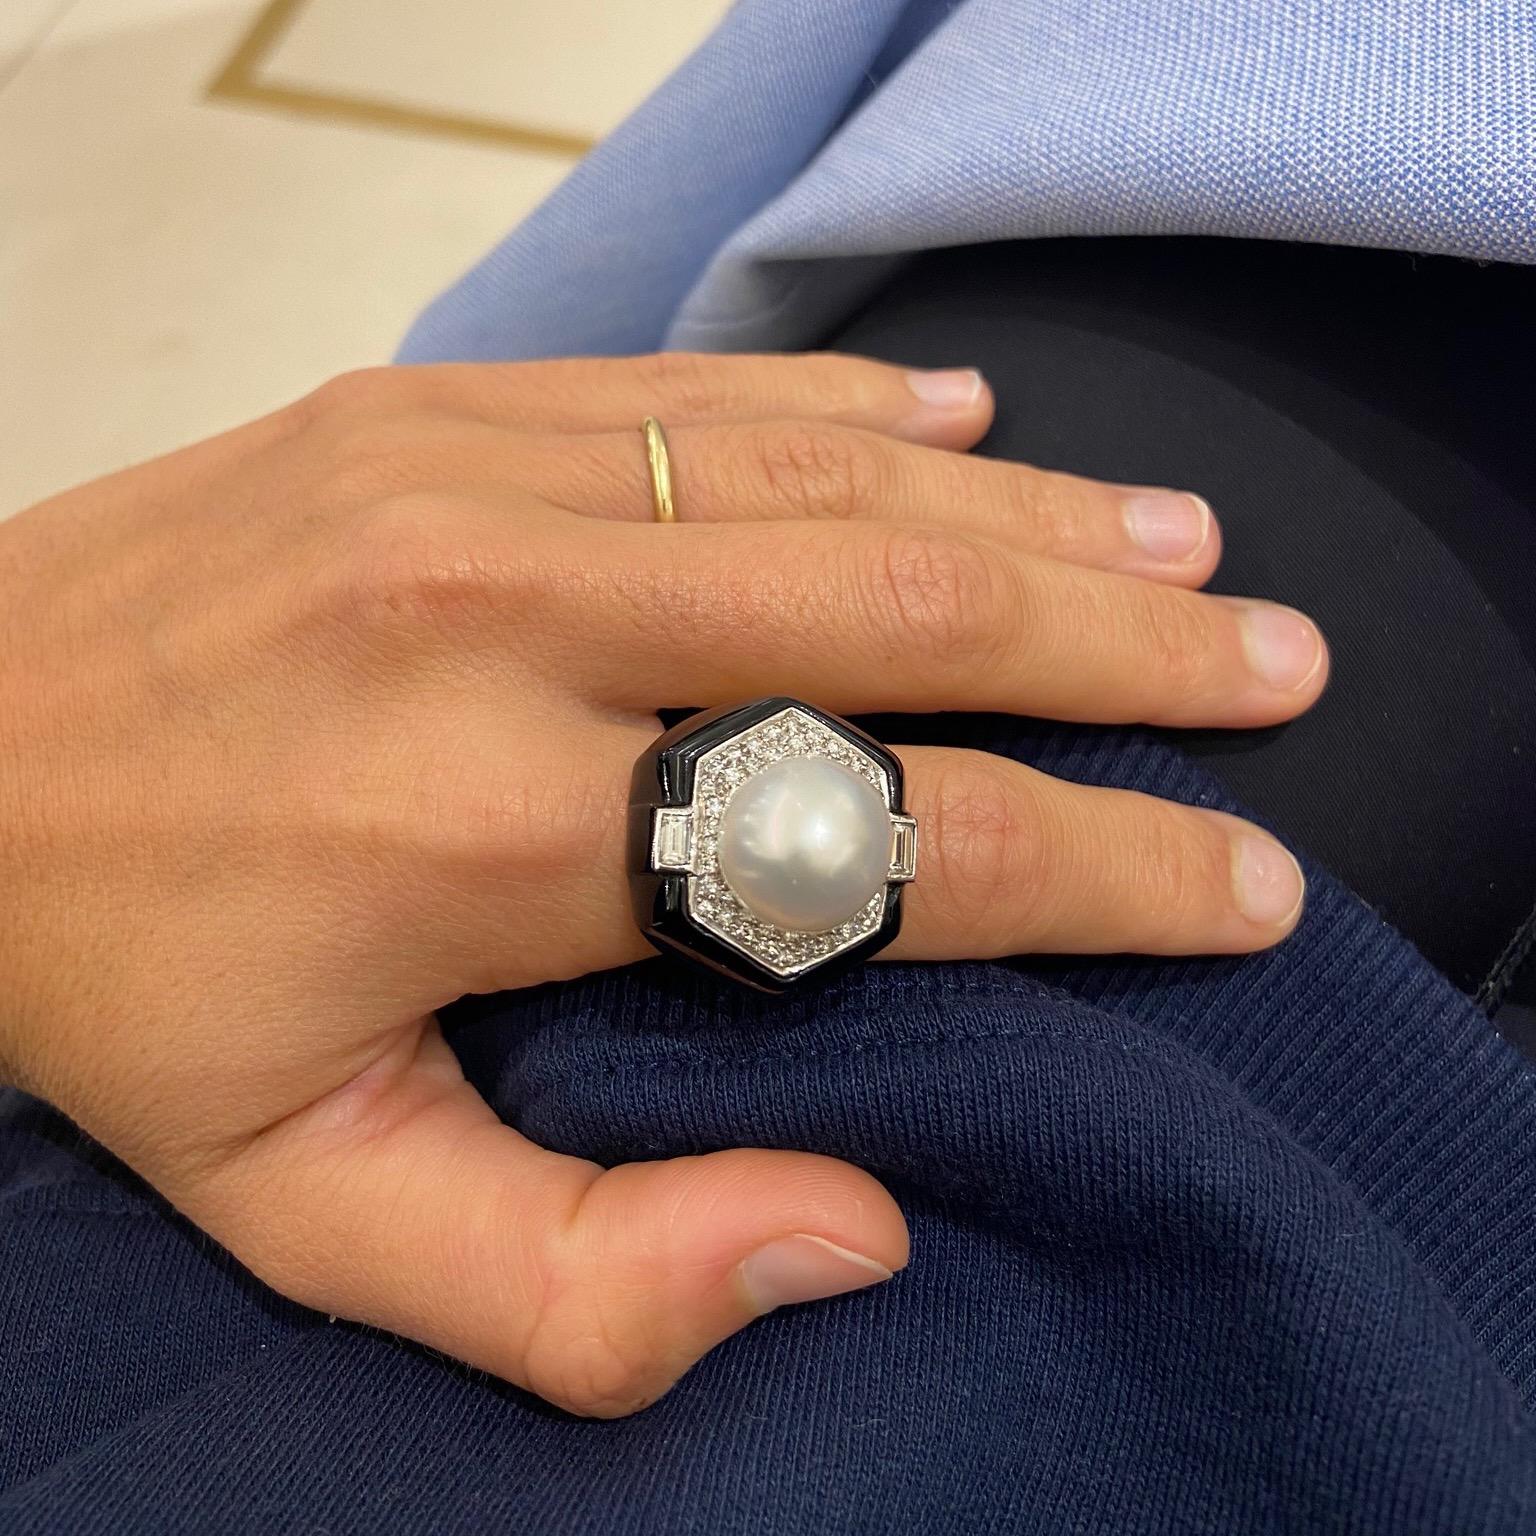 Cellini Jewelers bietet Design vom Feinsten. Dieser wunderschöne Art Deco Ring enthält eine 13,6 mm große Südseeperle, flankiert von Diamanten im Smaragd- und Brillantschliff. Umgeben von Onyx. Die Farbkombination und das Design sorgen für ein